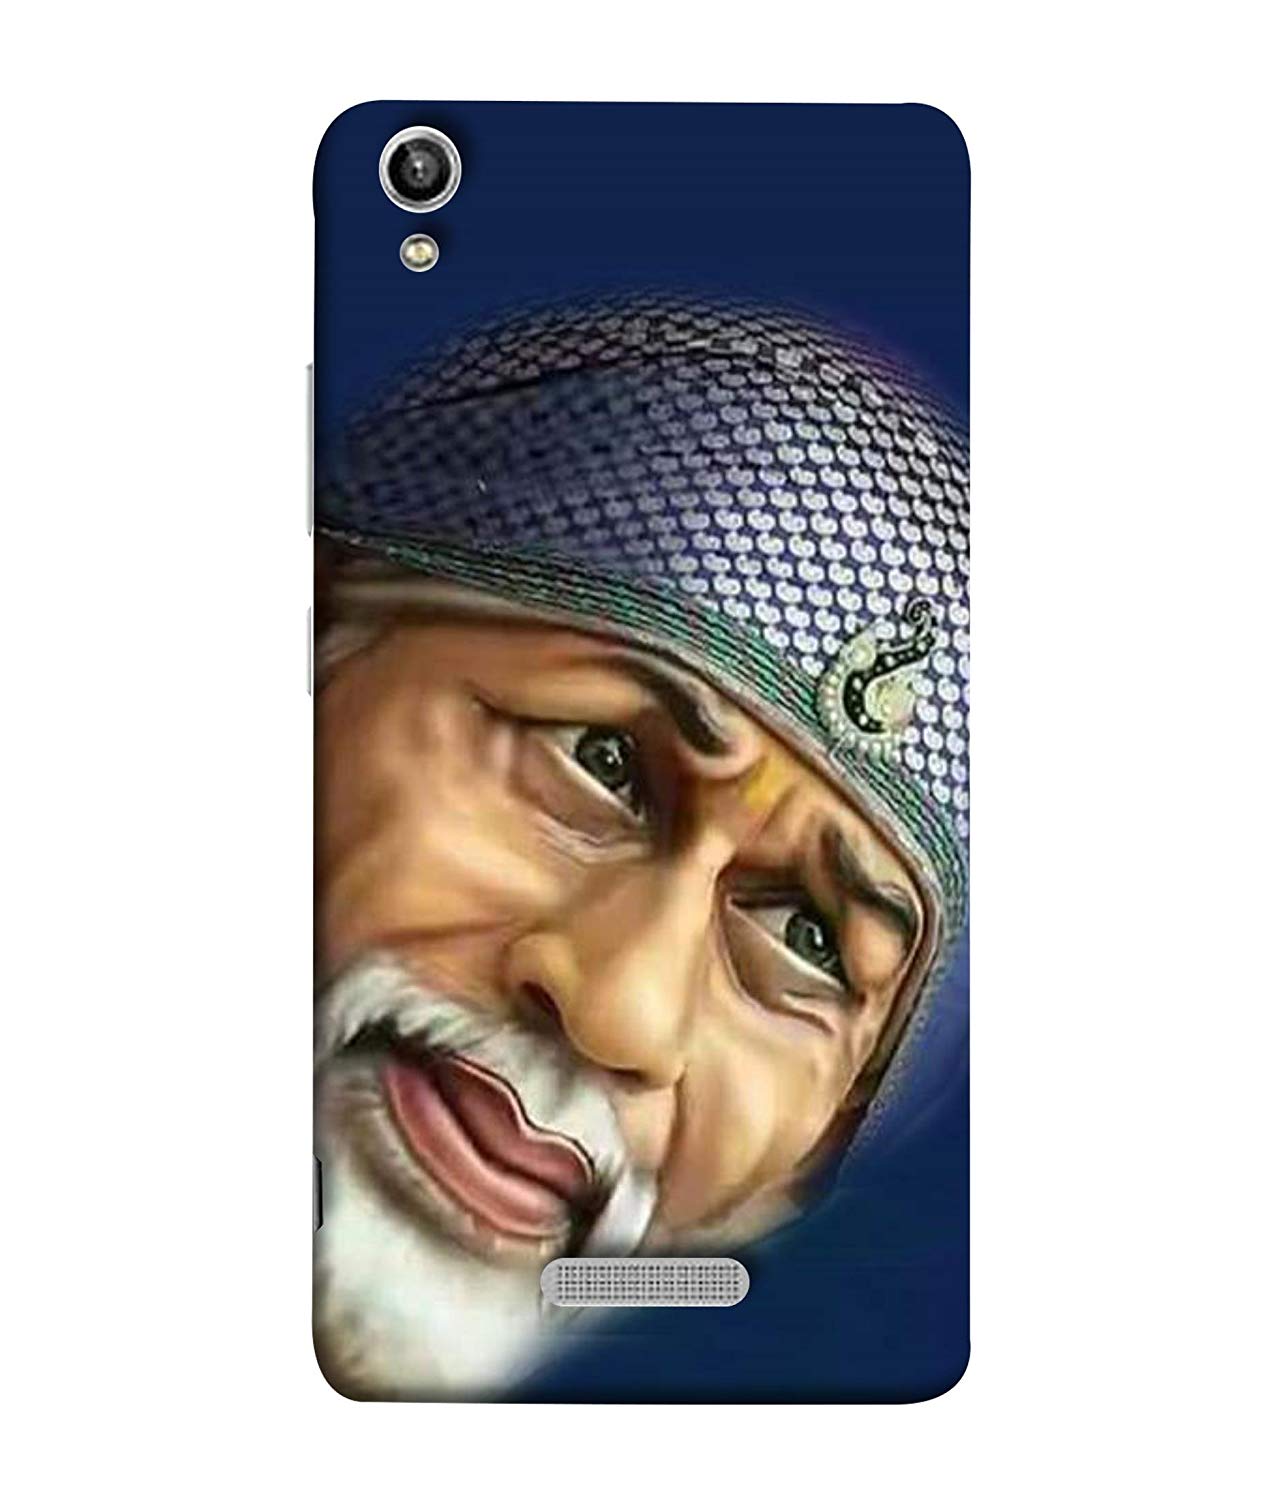 Sai Baba Smile - HD Wallpaper 